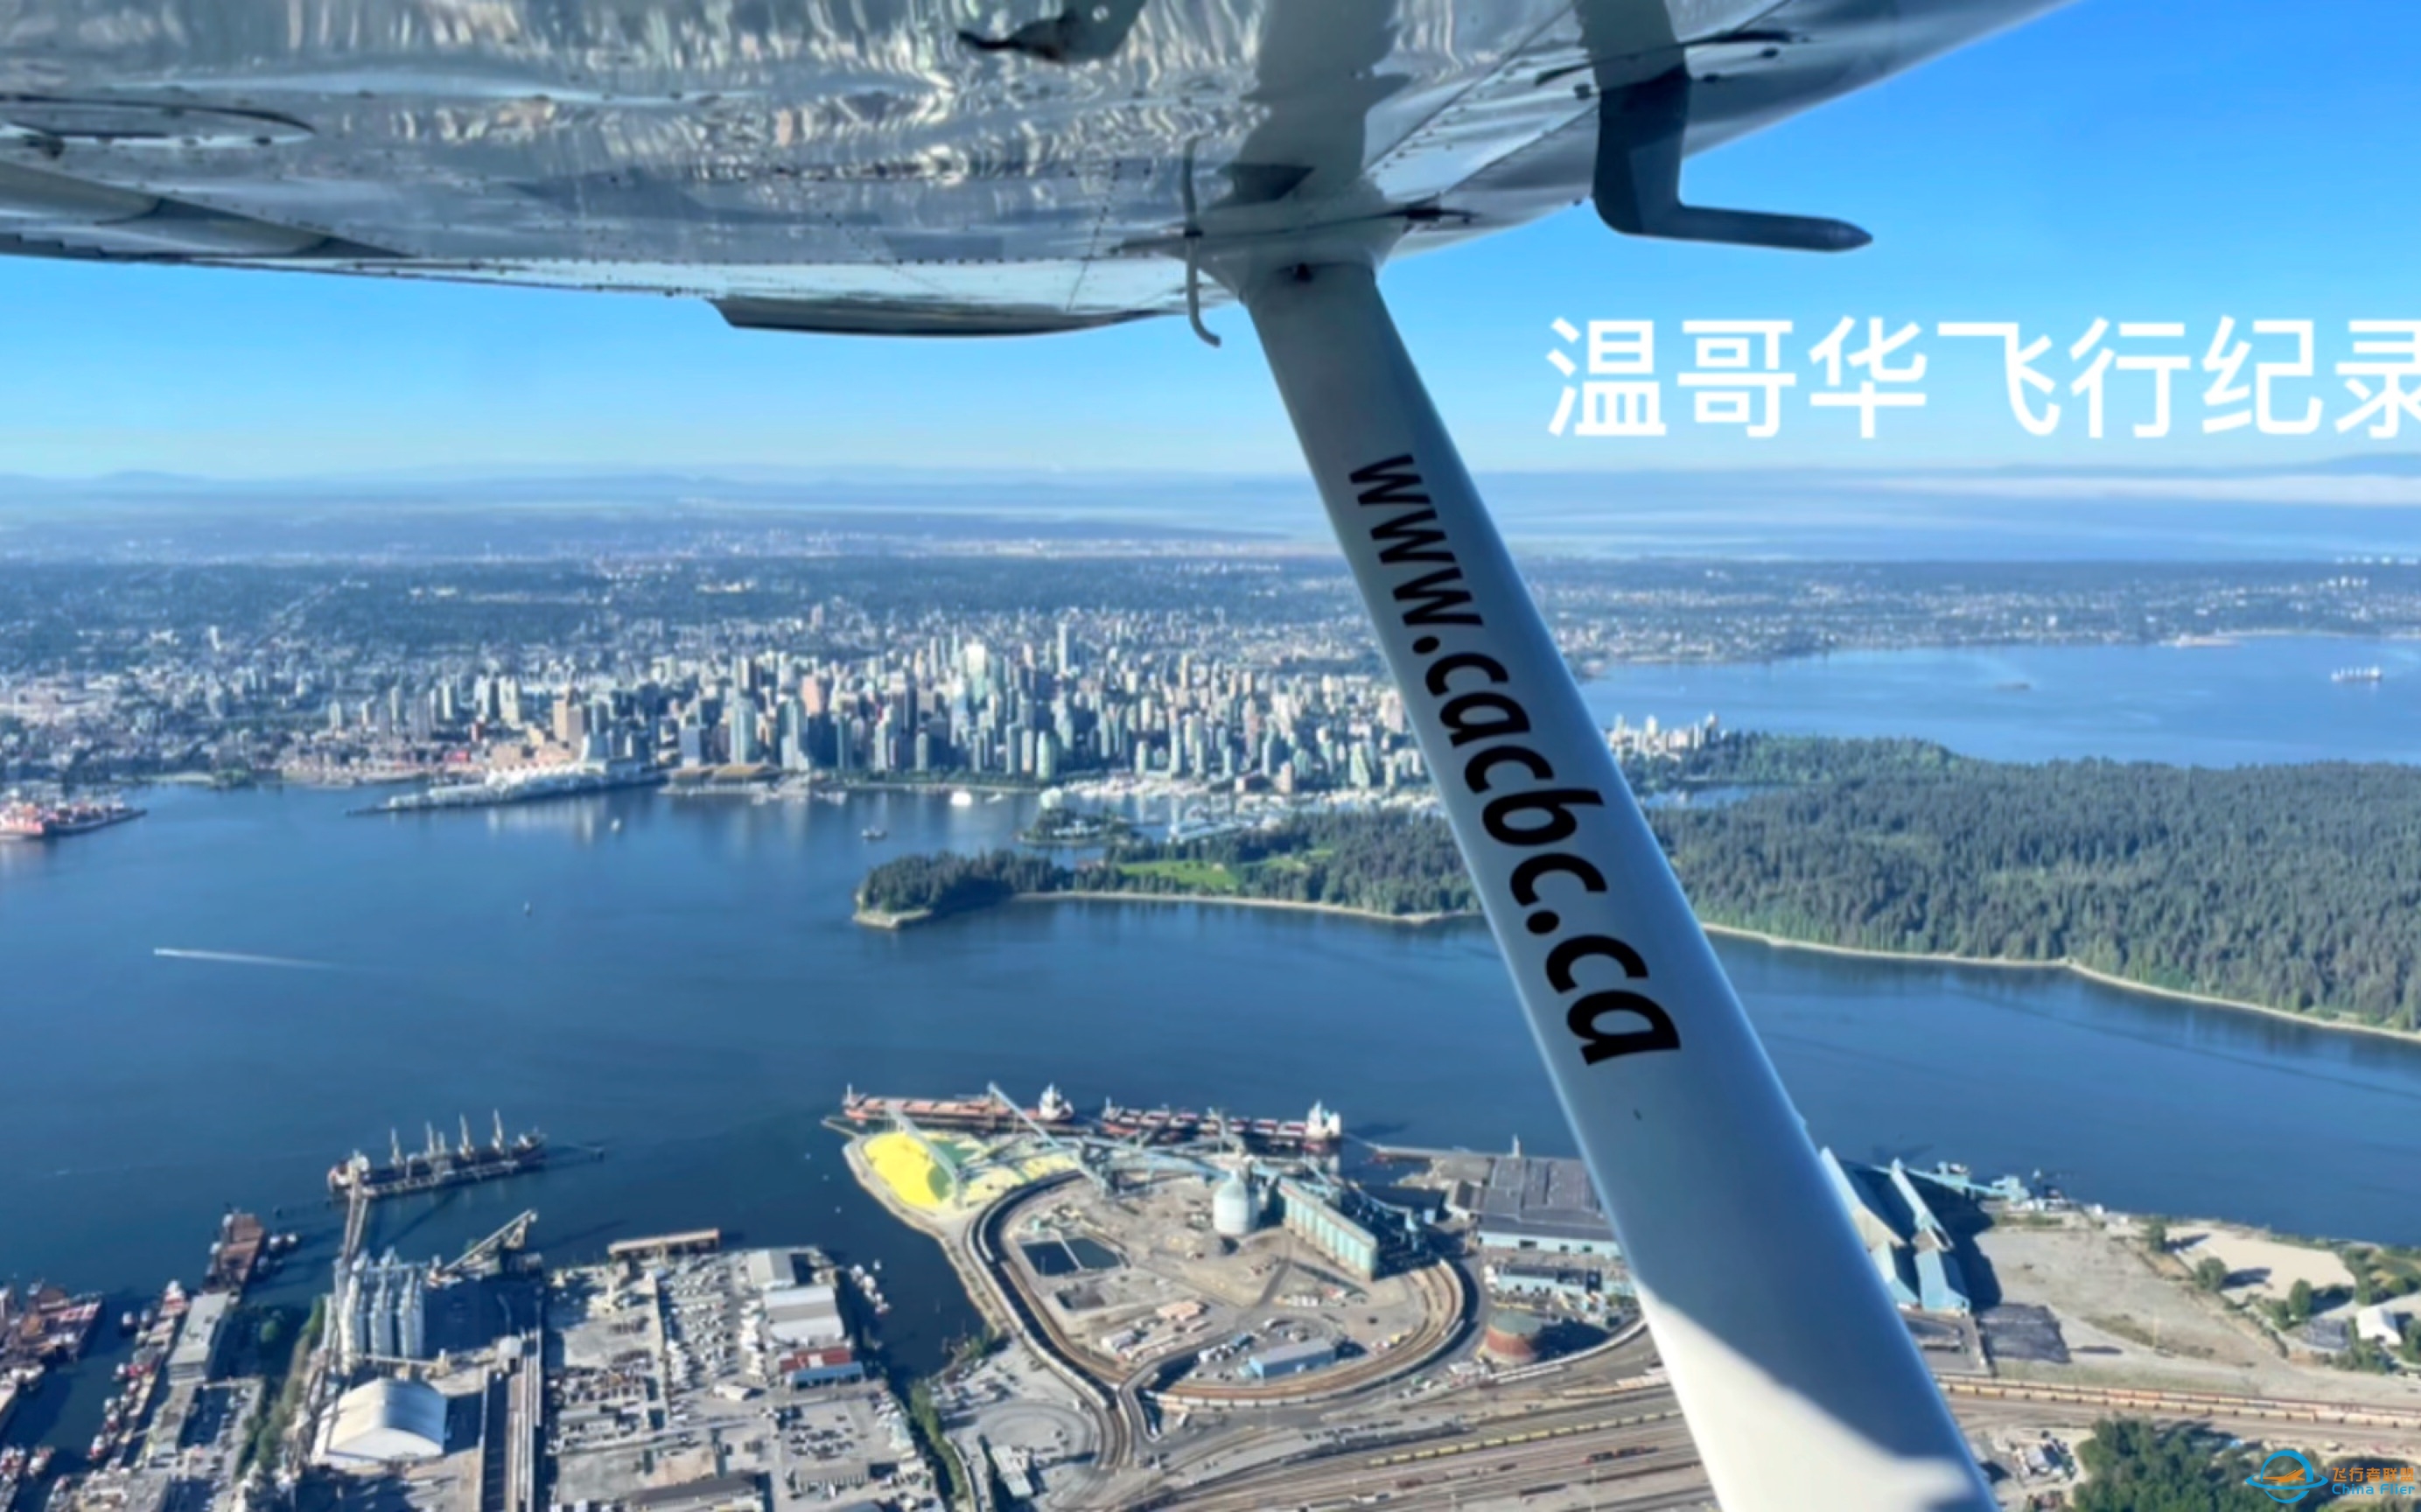 赛斯纳172飞行纪录•温哥华•飞行学员•驾驶舱视角-7099 